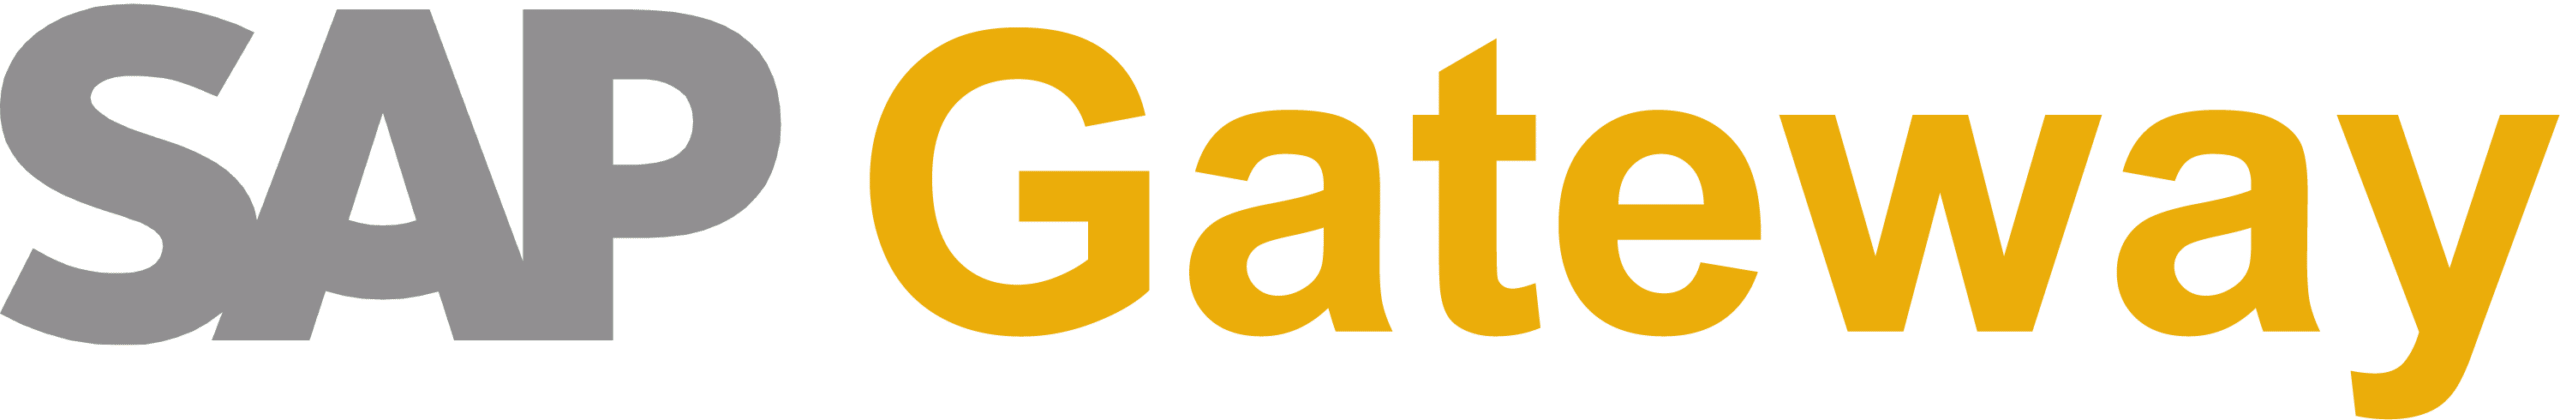 SAP Gateway